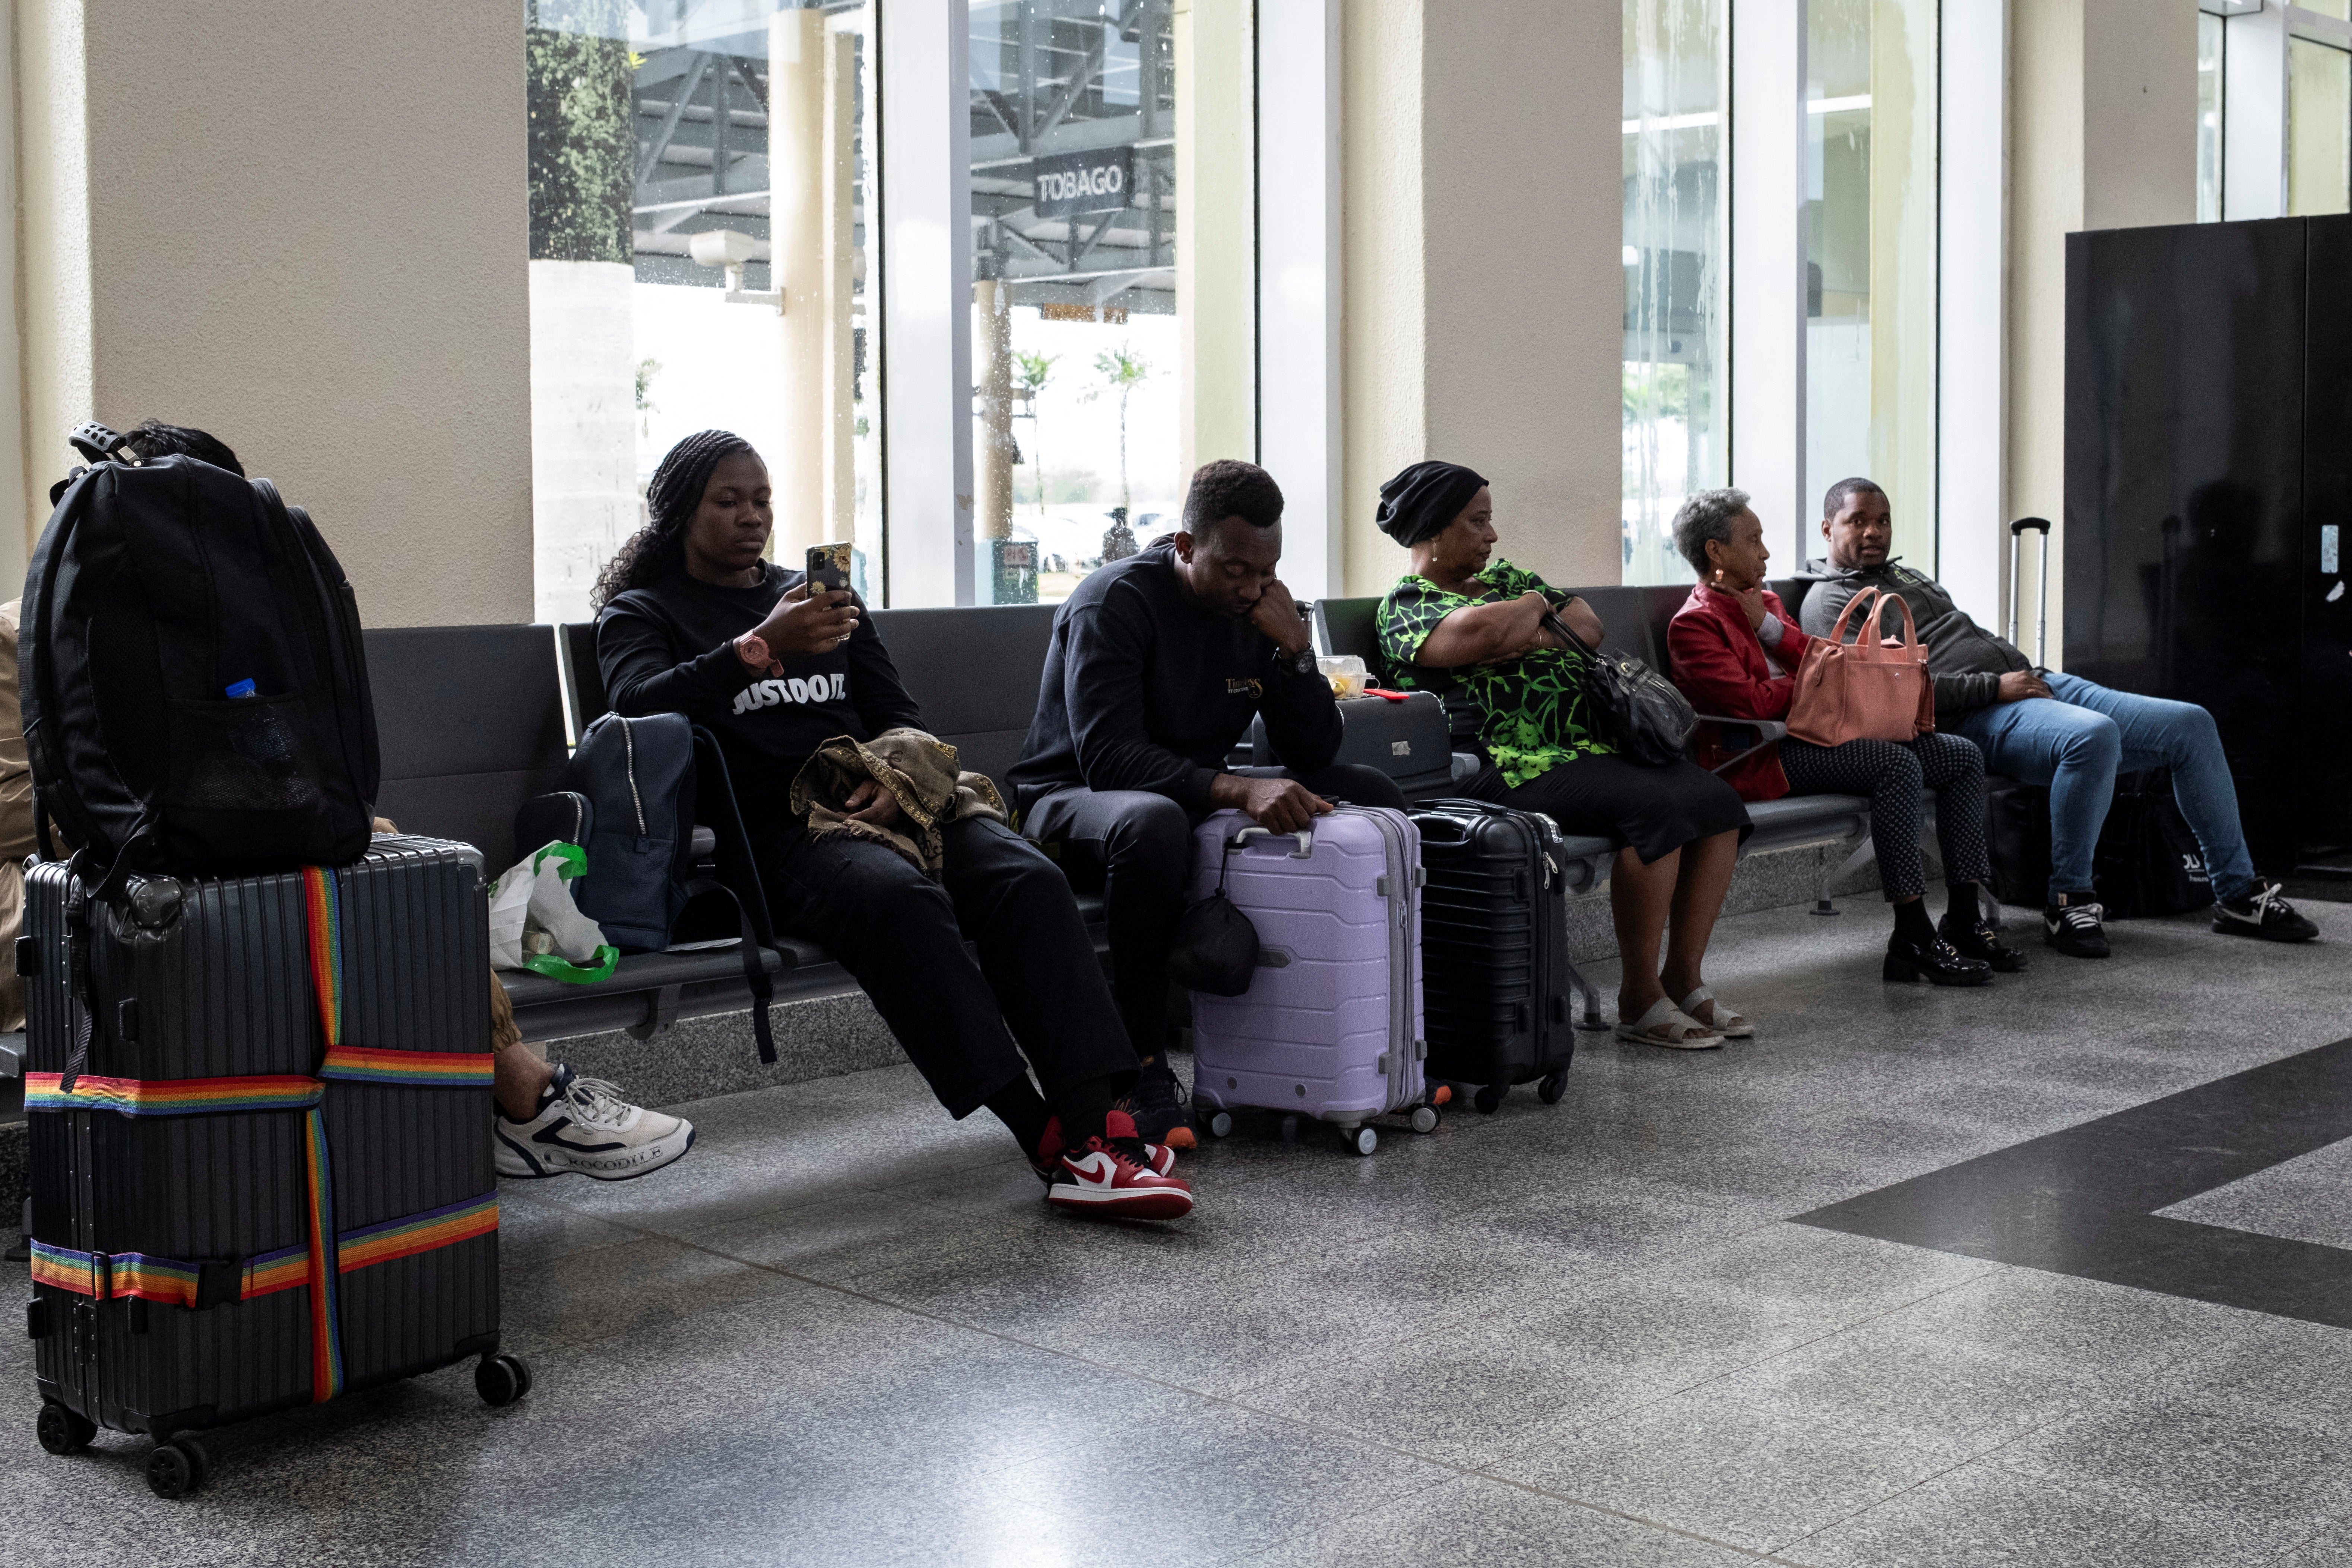 Podróżni czekają na międzynarodowym lotnisku Piarco, ponieważ loty zostały opóźnione i odwołane z powodu huraganu Beryl